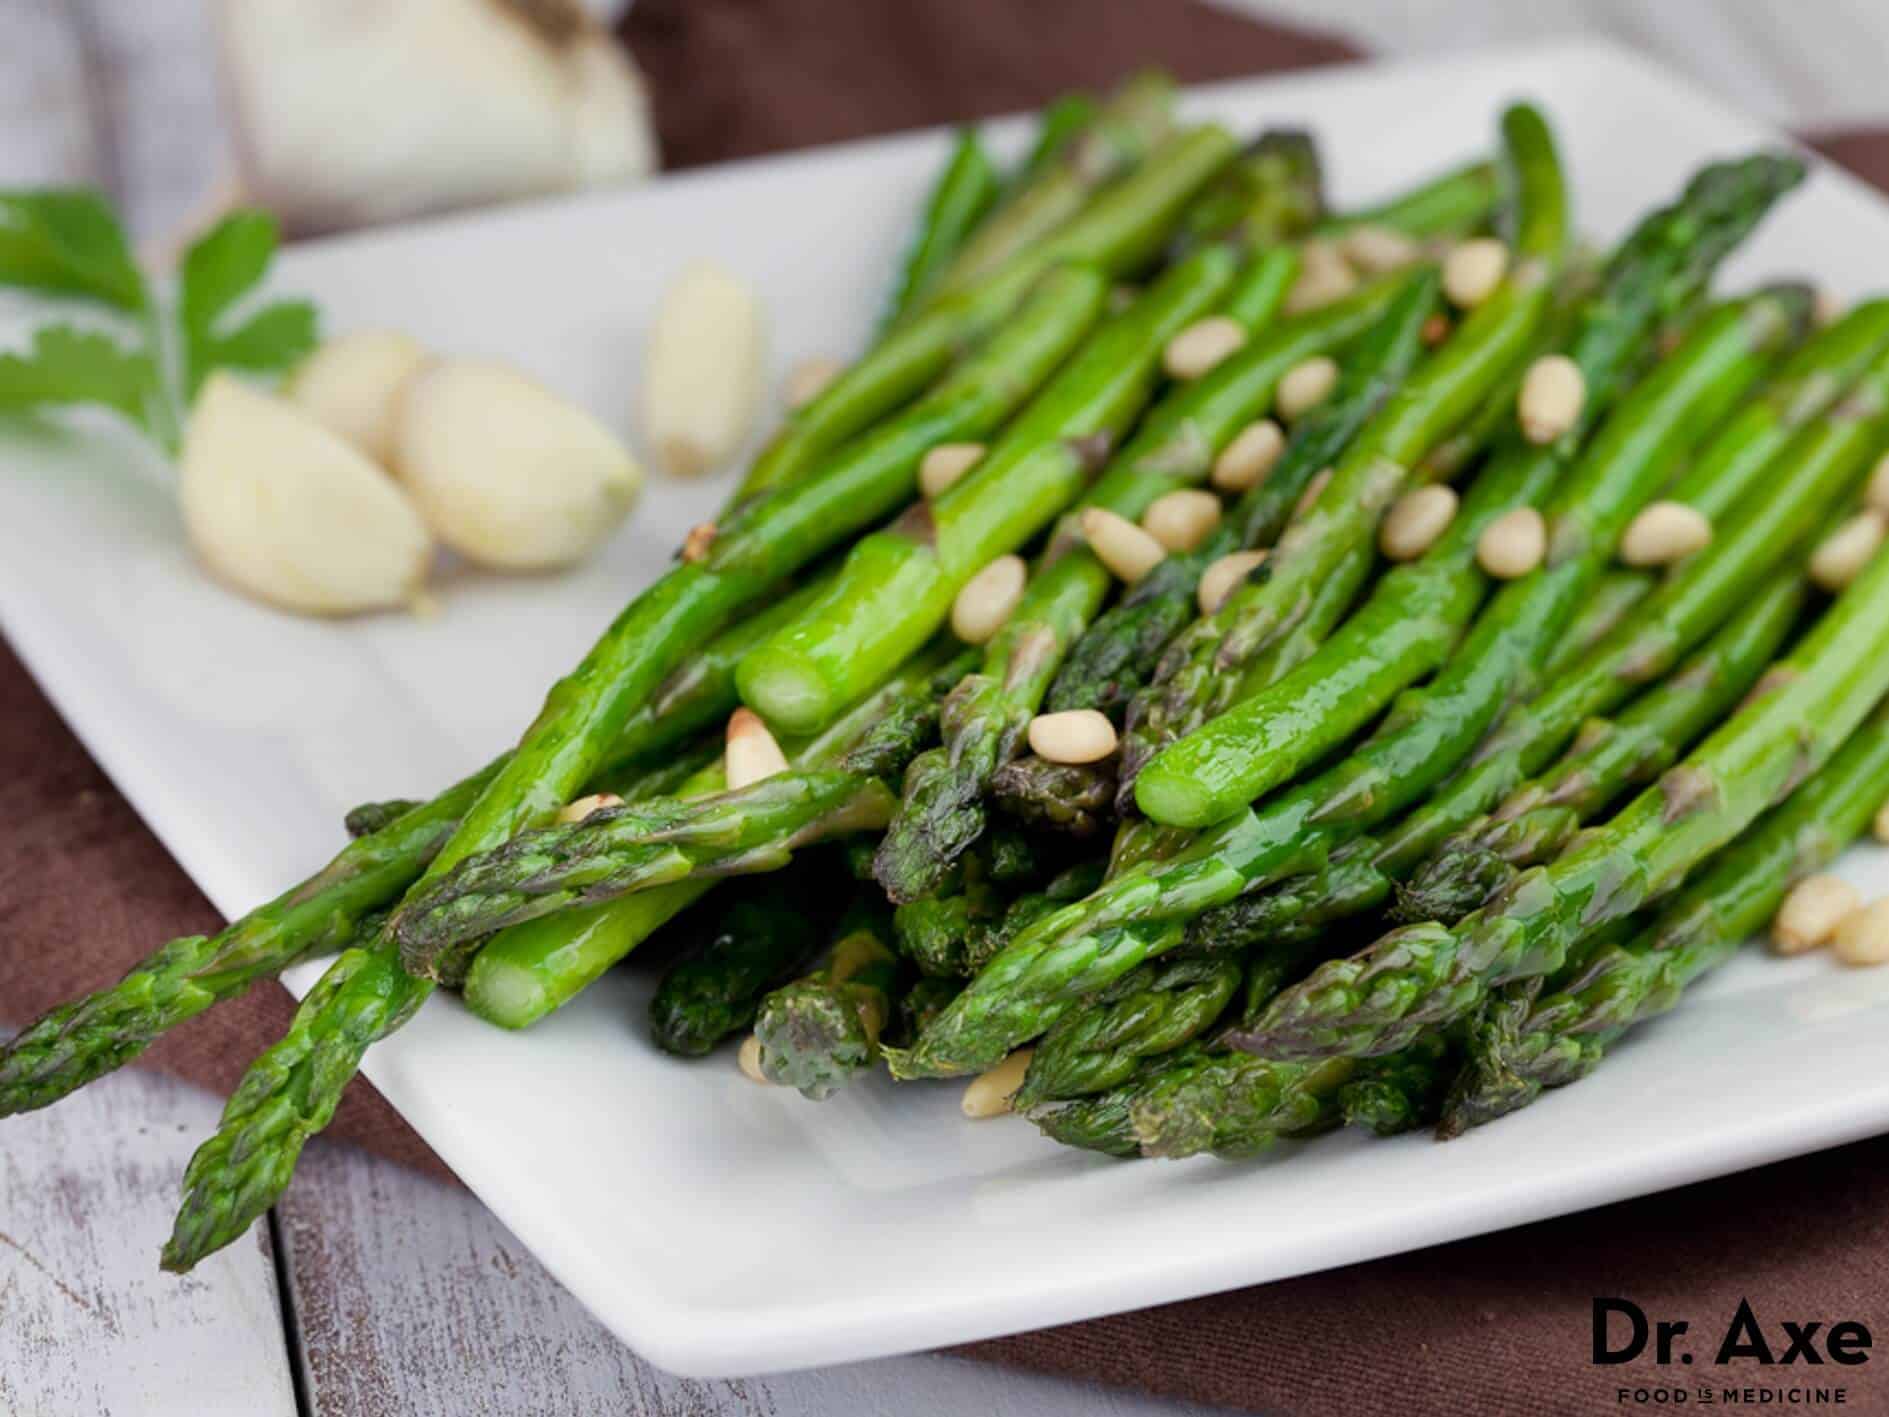 Garlic asparagus recipe - Dr. Axe